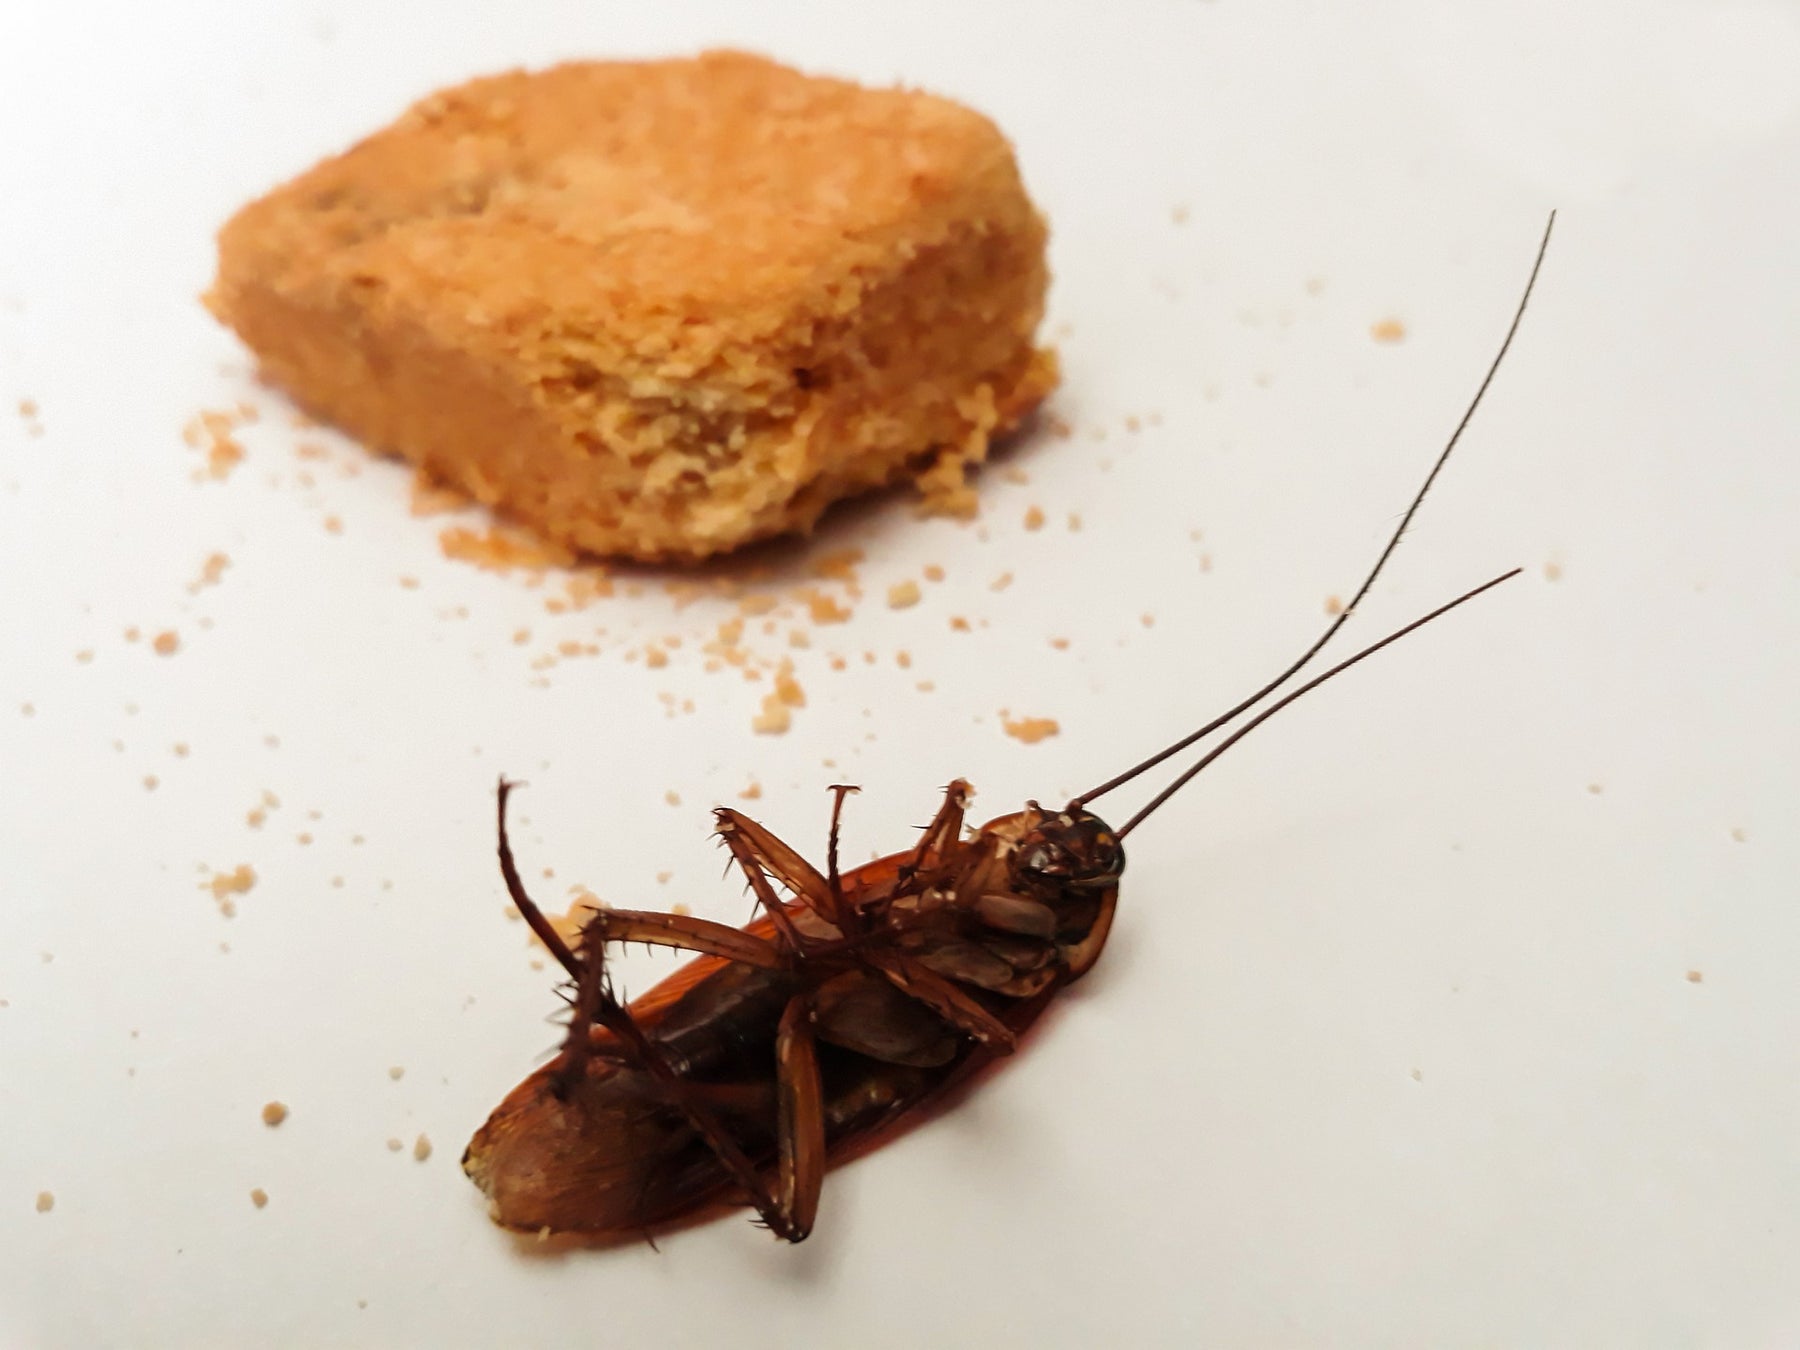 Eine tote Kakerlake und neben ihr ein Stück Brot